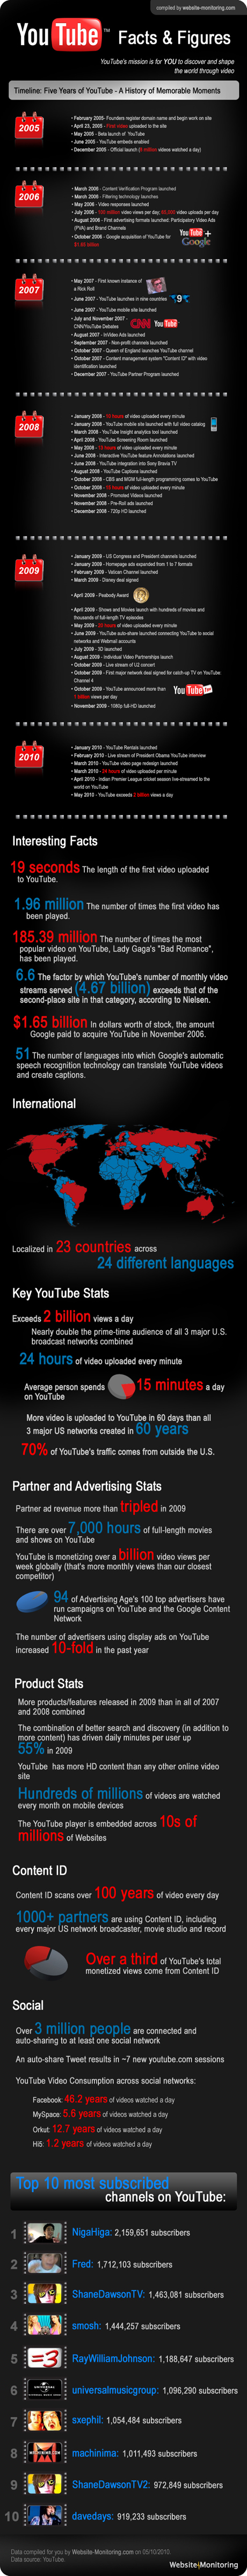 YouTube anniversary infographic